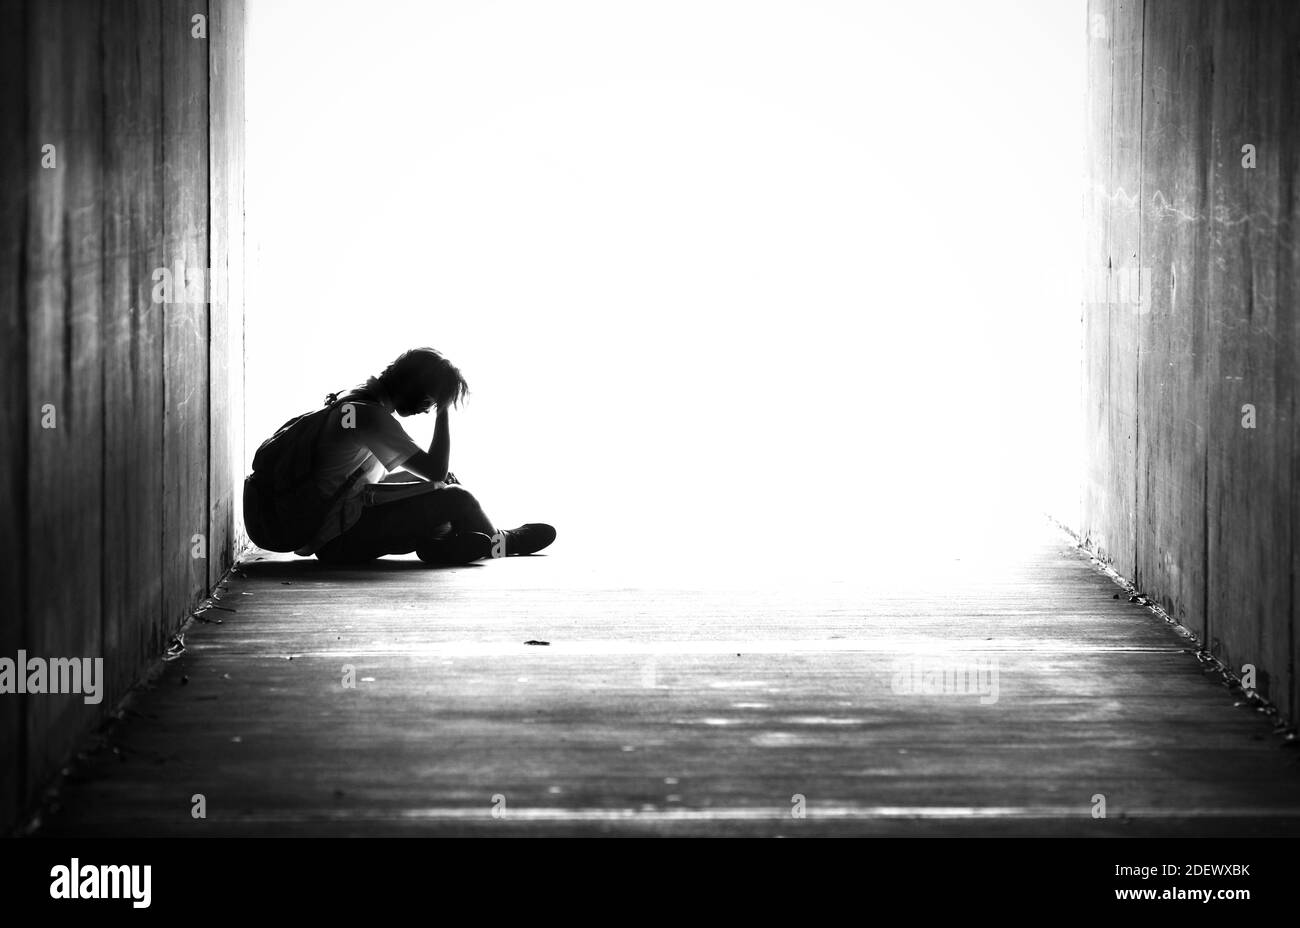 Silhouette di un giovane maschio seduto da solo in un tunnel con la testa in mano. Immagine in bianco e nero del ragazzino della scuola con la borsa sulla borsa. Verso il basso e verso l'esterno Foto Stock